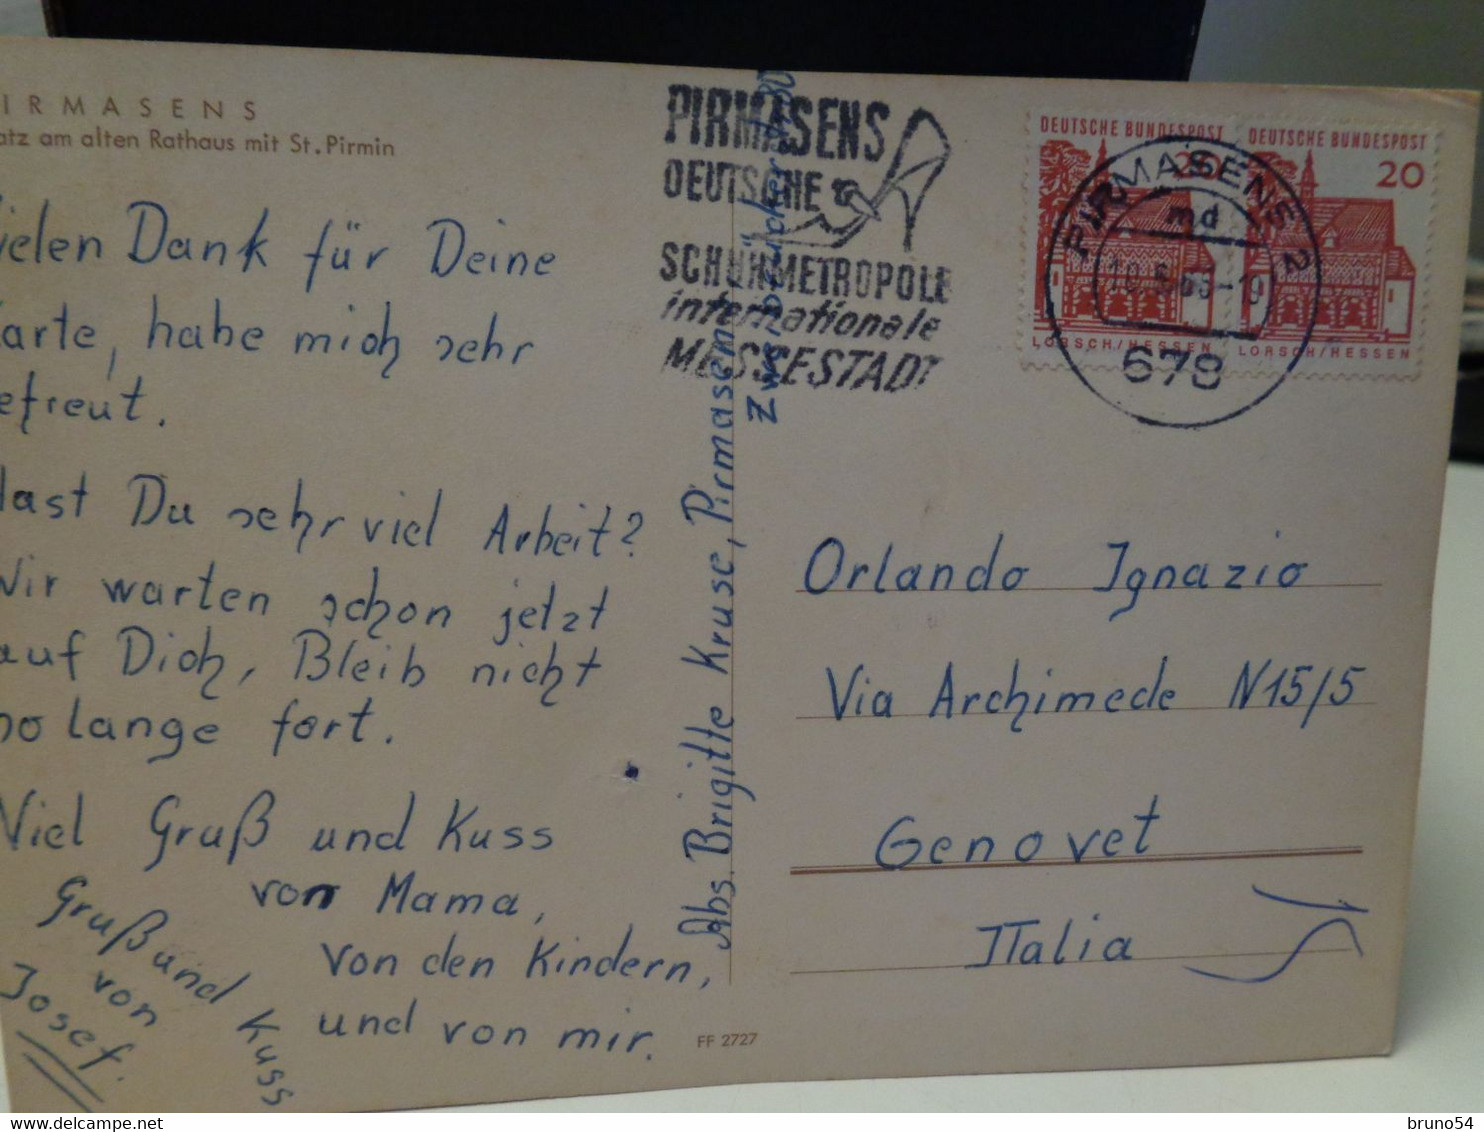 17 Postkarten Pirmasens Alle reisen mit Briefmarken